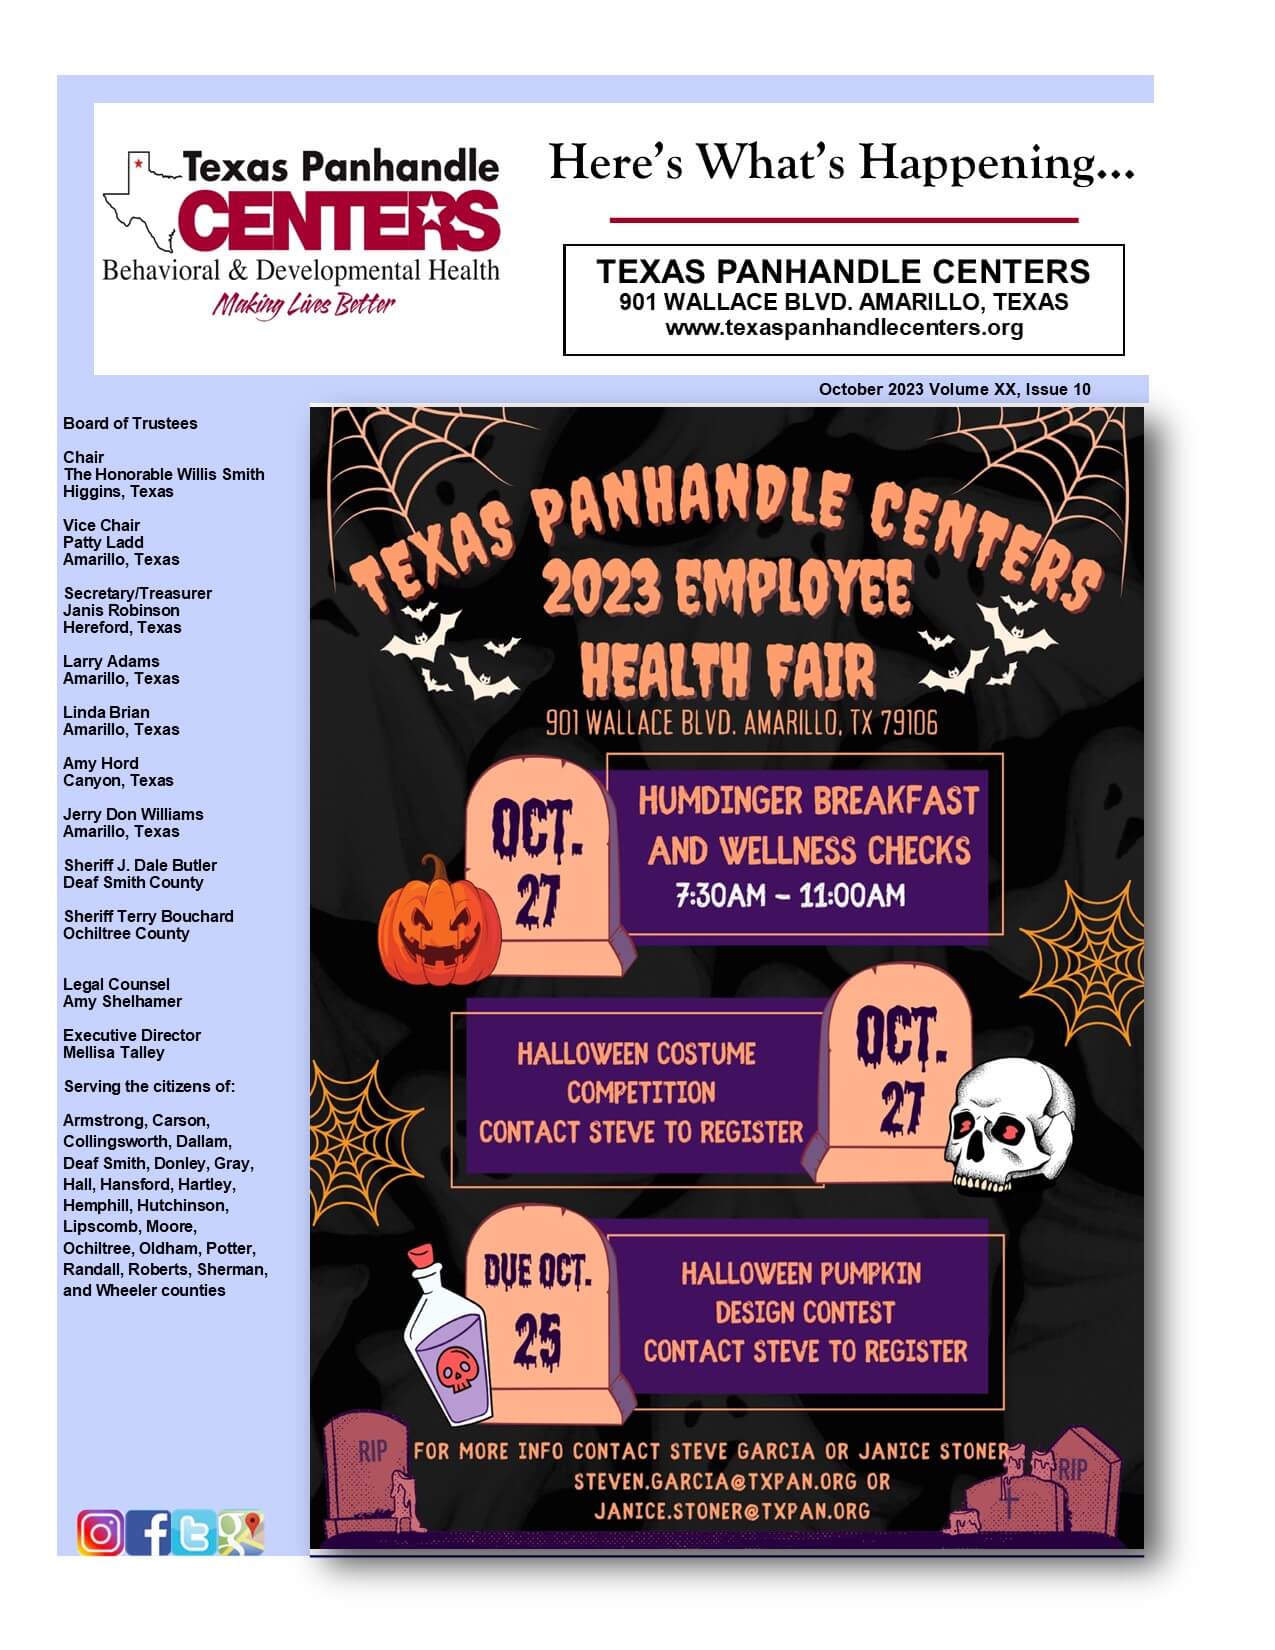 October 2023 Newsletter Cover